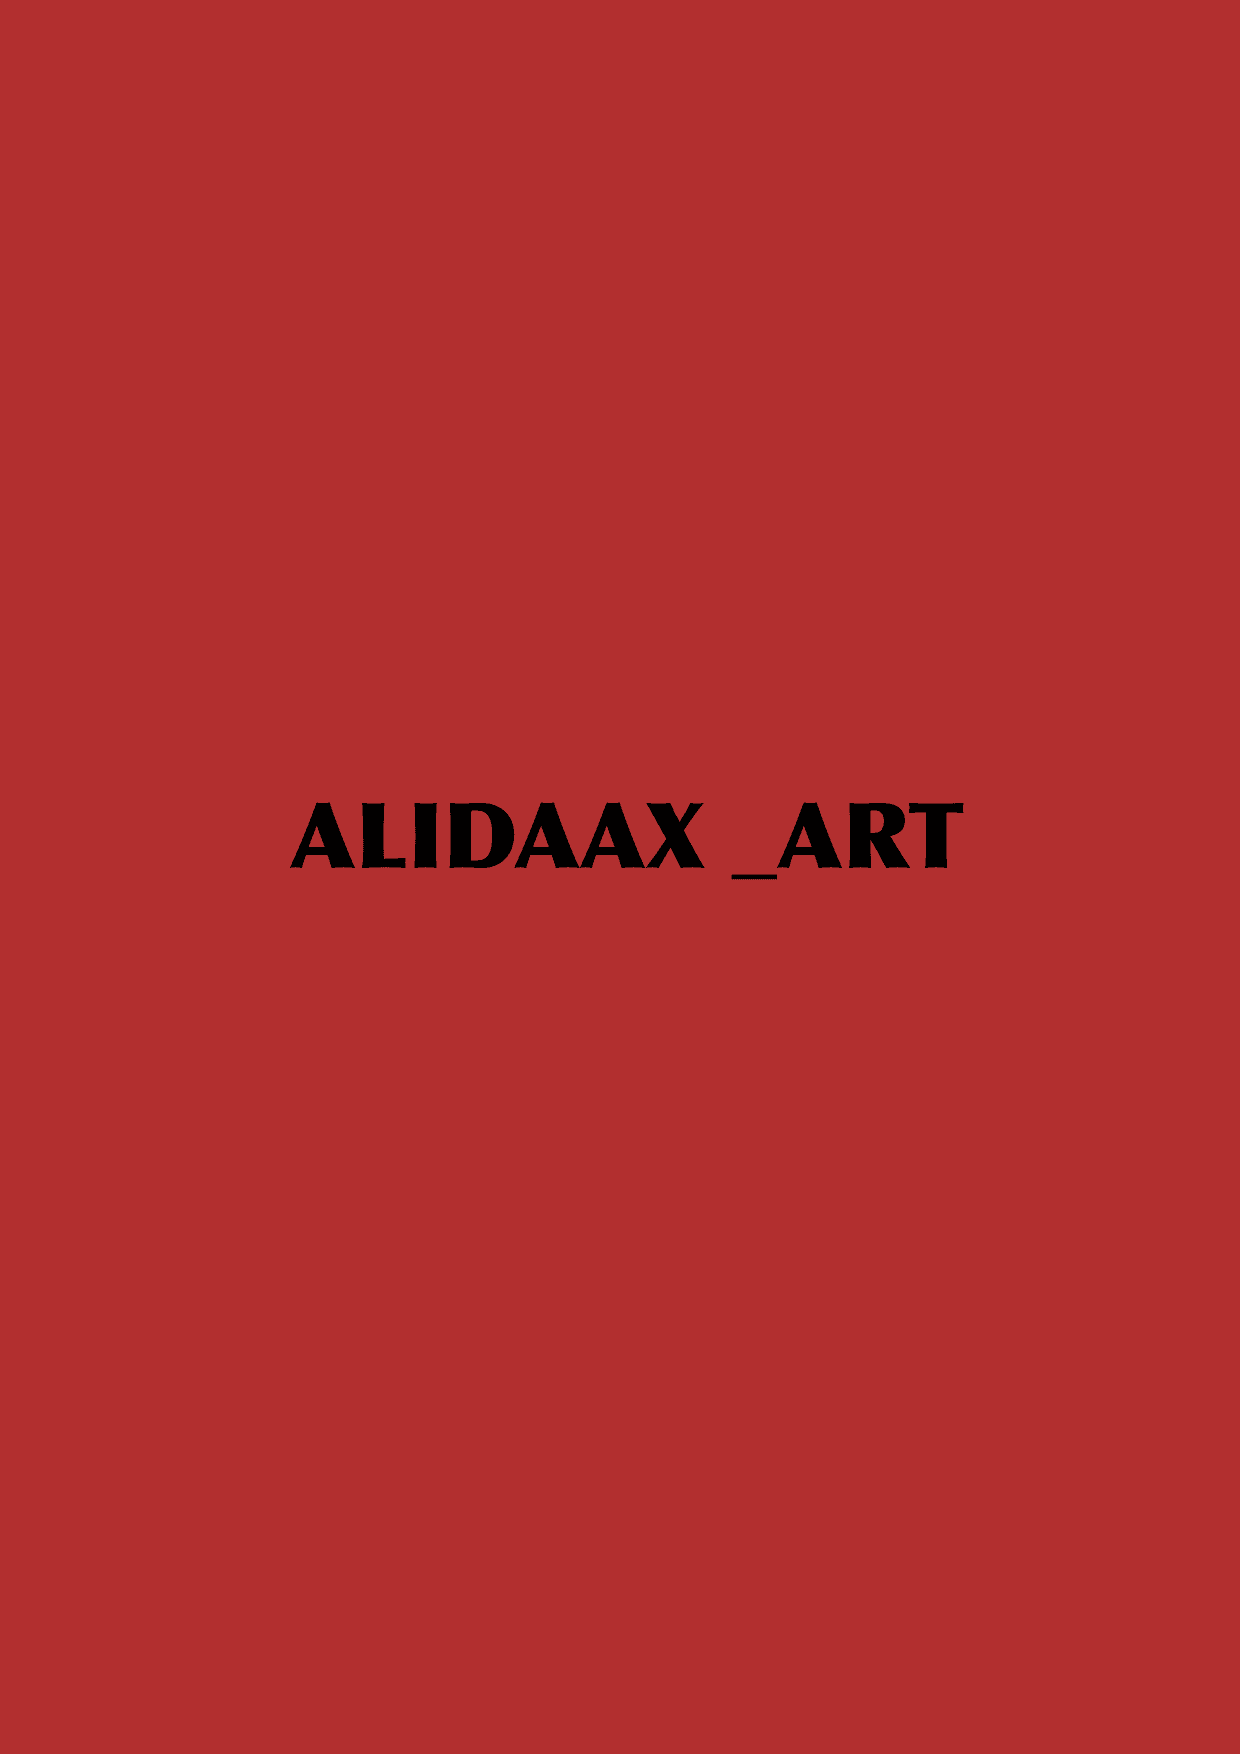 Alidaax_Art バナー